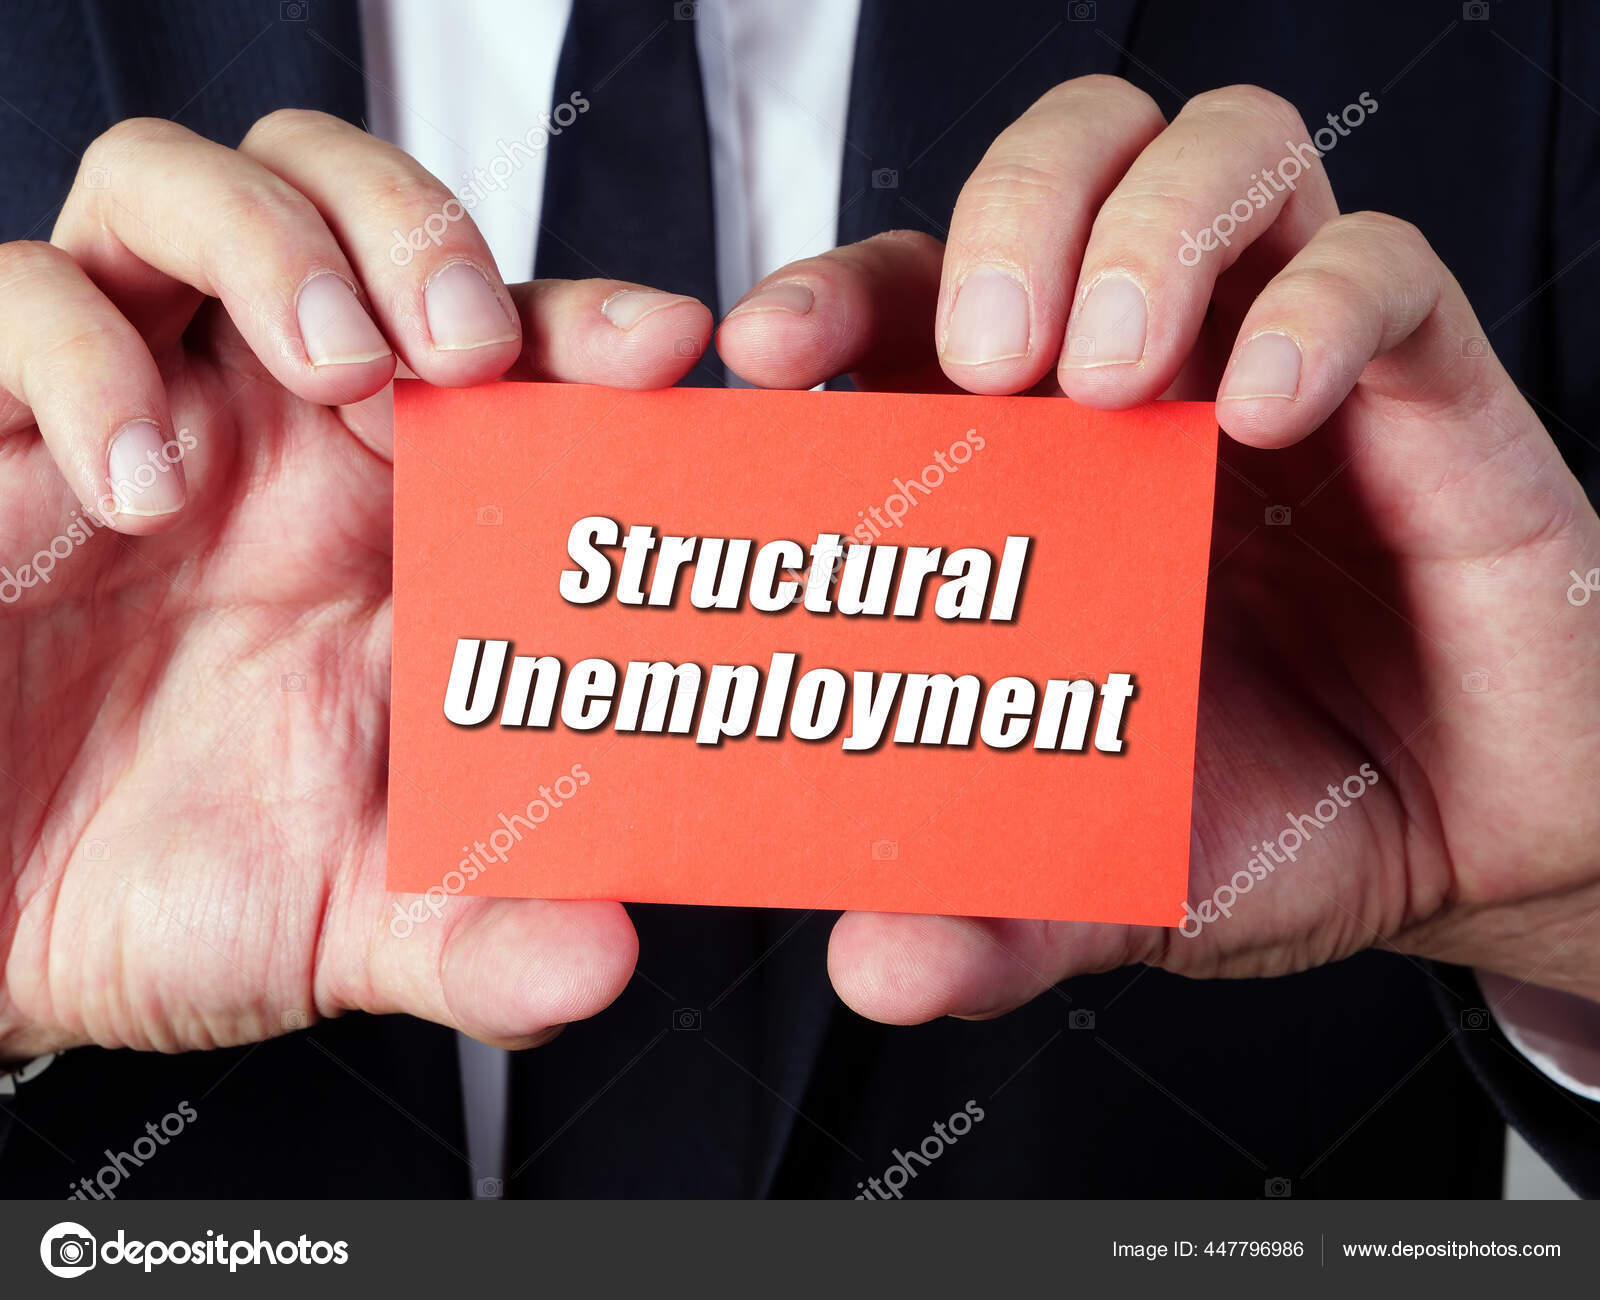 structurele werkloosheid, definitie, voorbeelden, economie